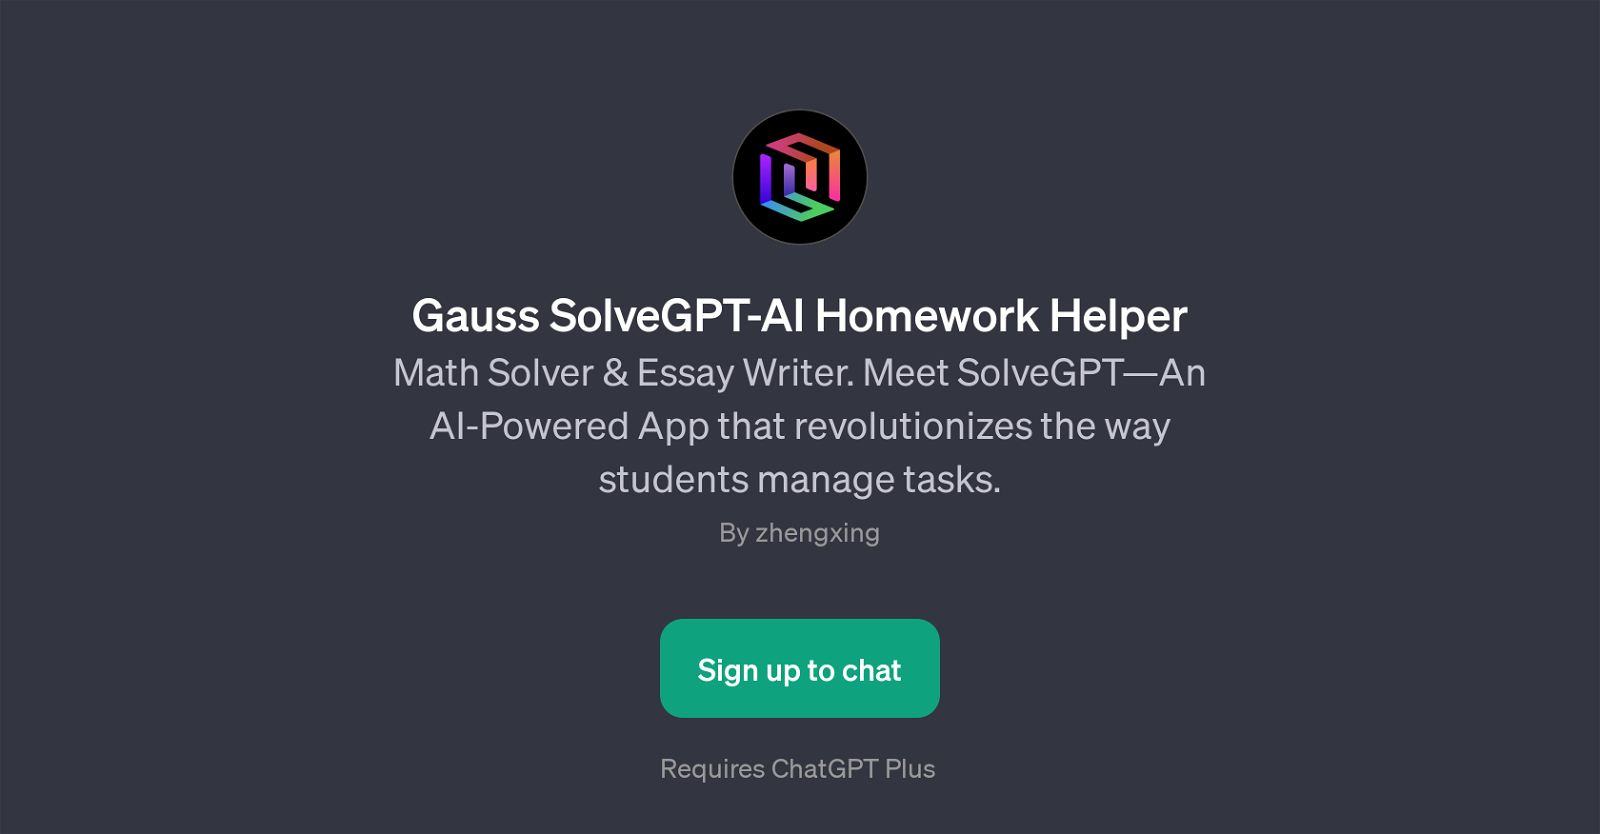 Gauss SolveGPT-AI Homework Helper website